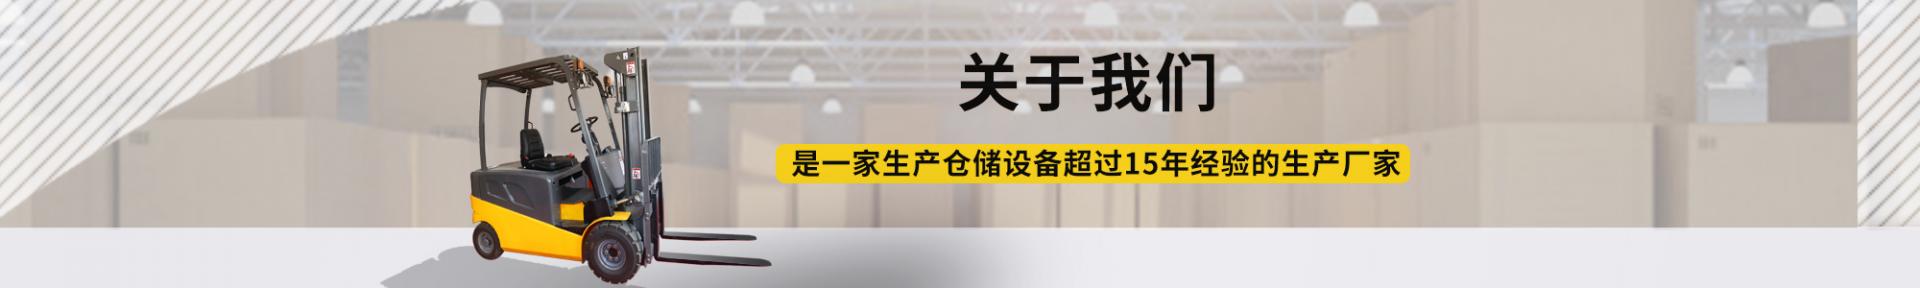 【48812】智蓝精灵电动面包续航340北京新能源专卖